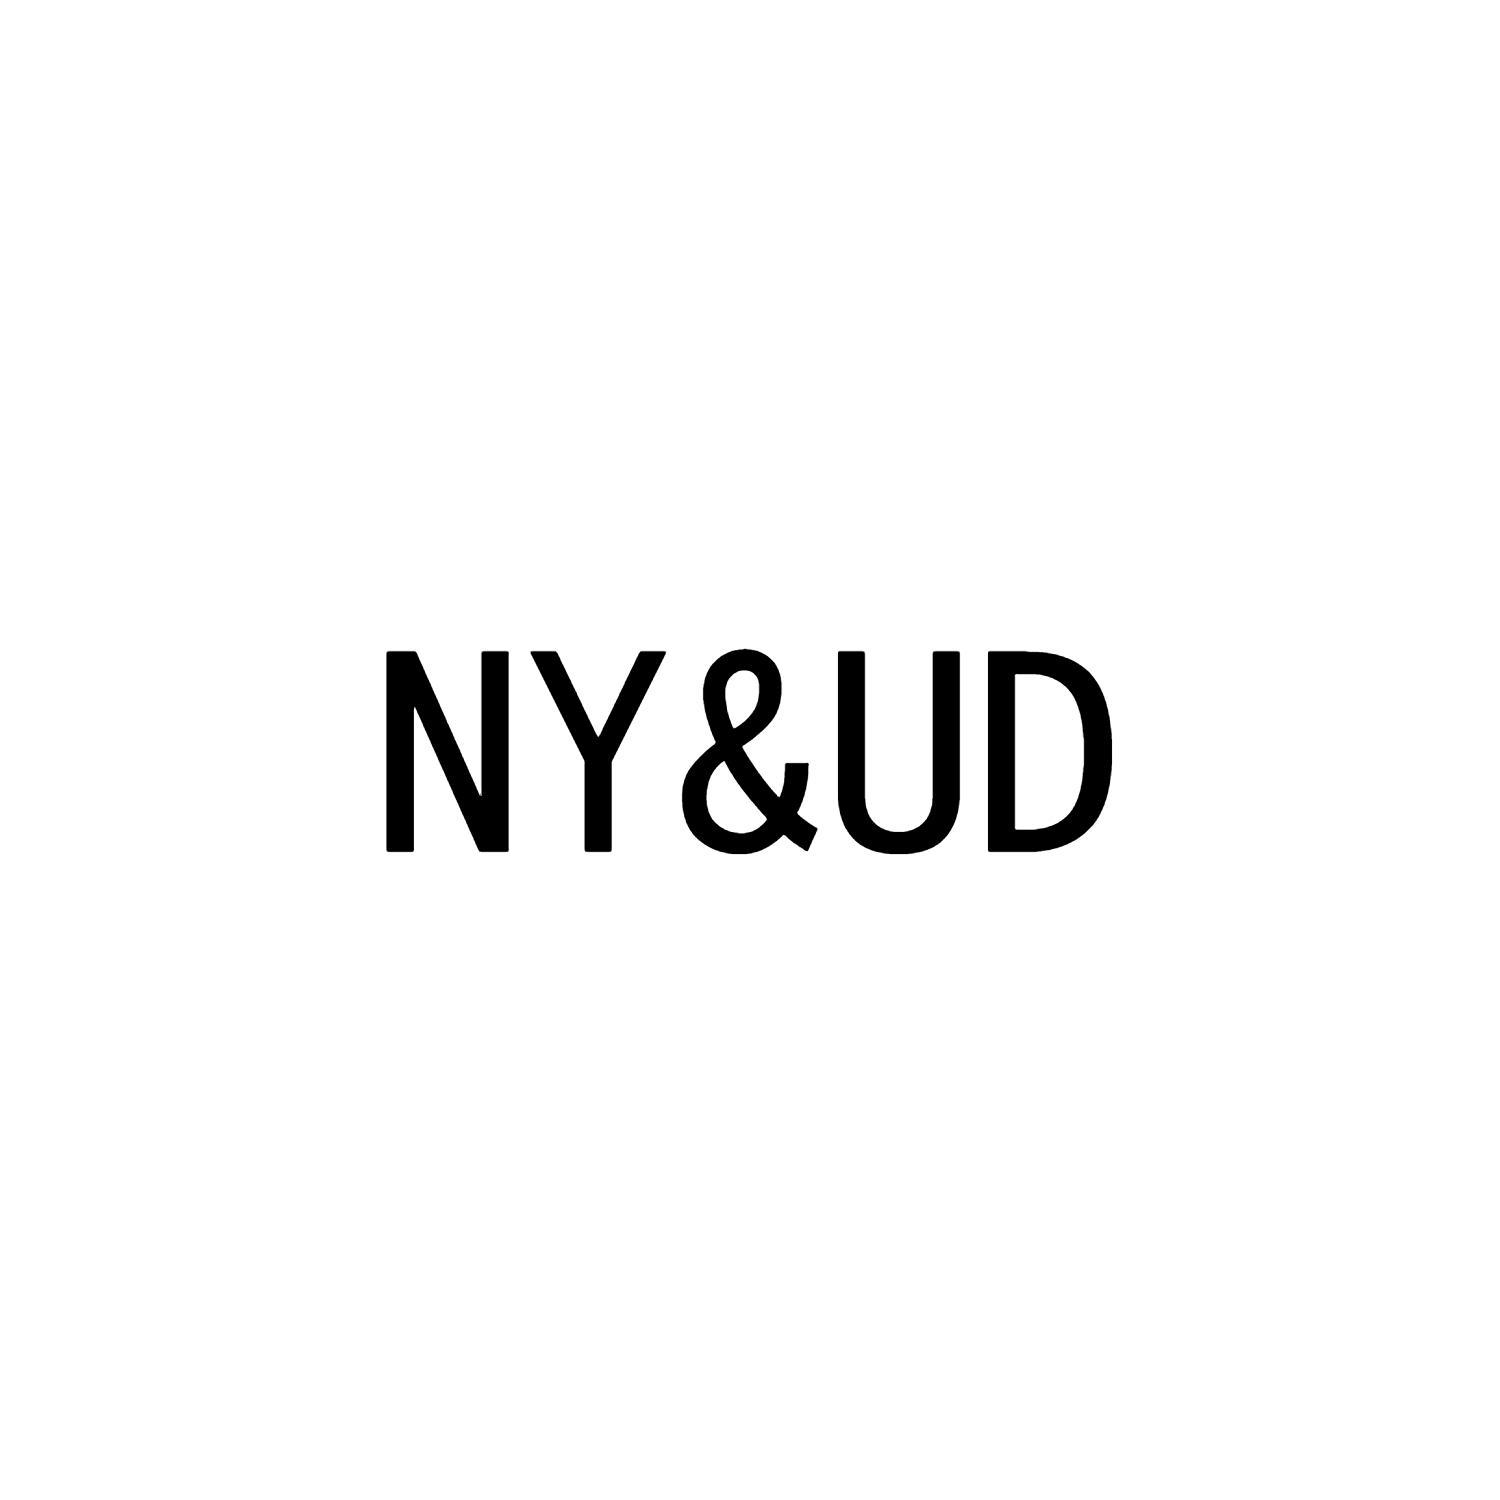 NY&UD